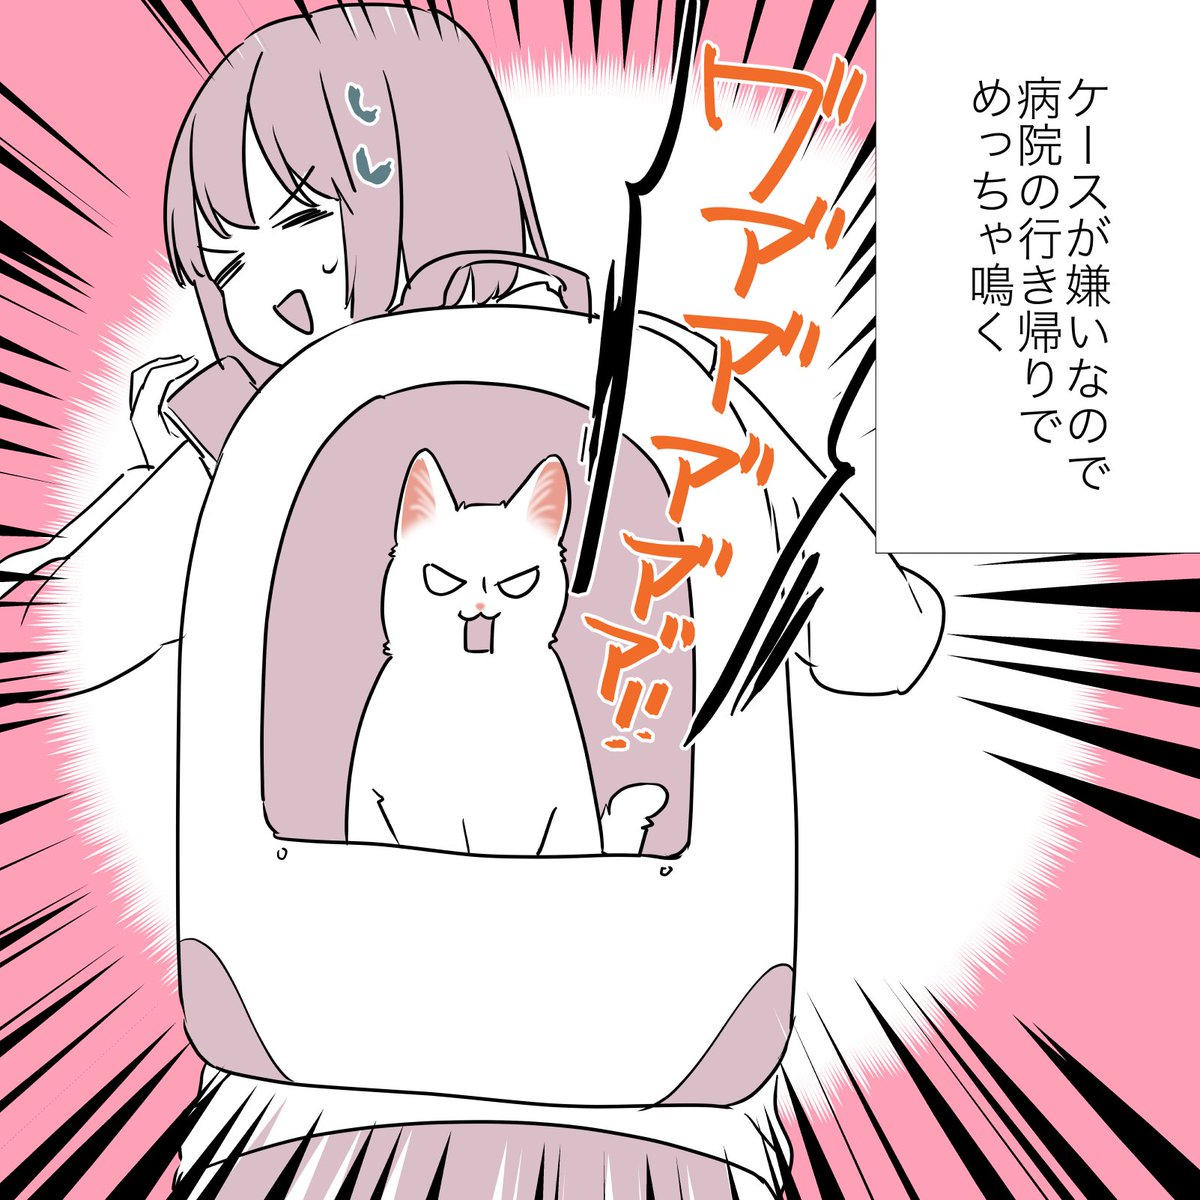 猫の心、難し〜〜〜〜!!!!!って話(2/2) #漫画が読めるハッシュタグ #愛されたがりの白猫ミコさん